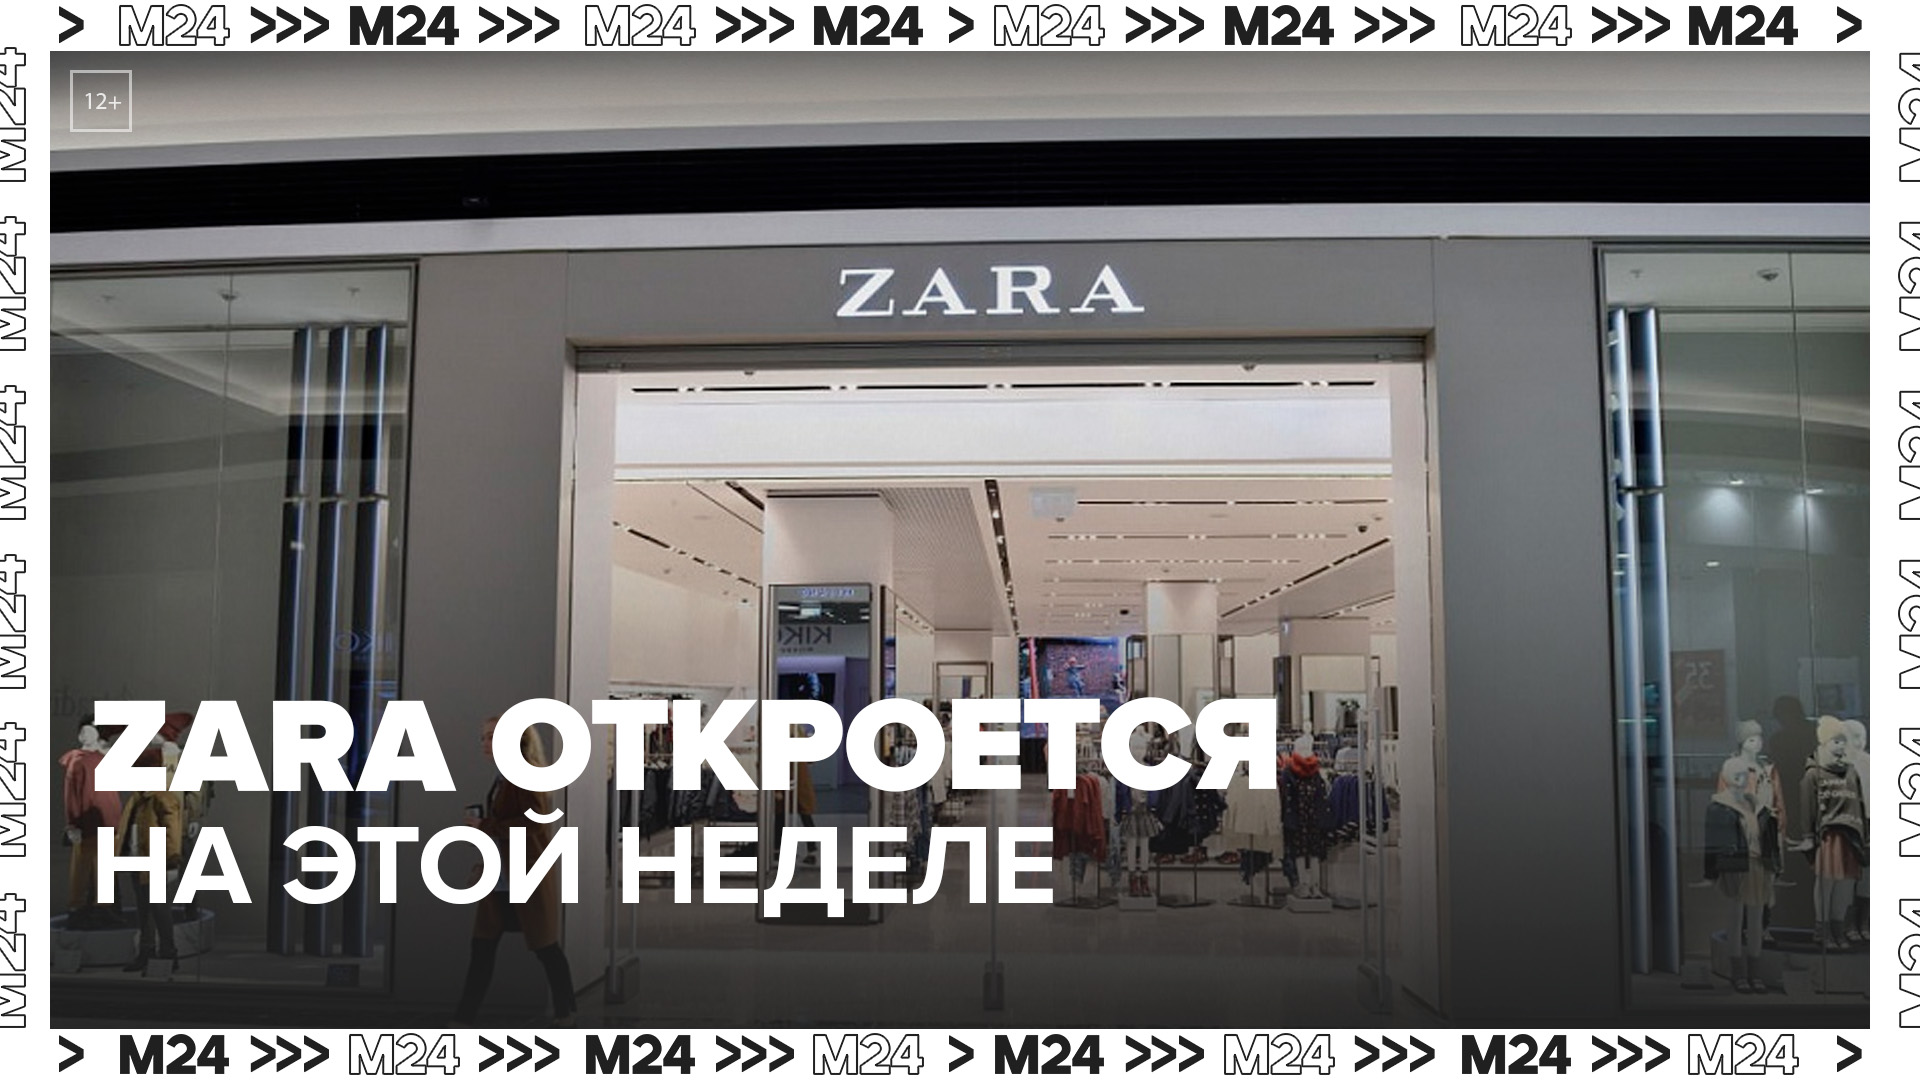 "Актуальный репортаж": экс-магазины Zara откроют в Москве на этой неделе - Москва 24